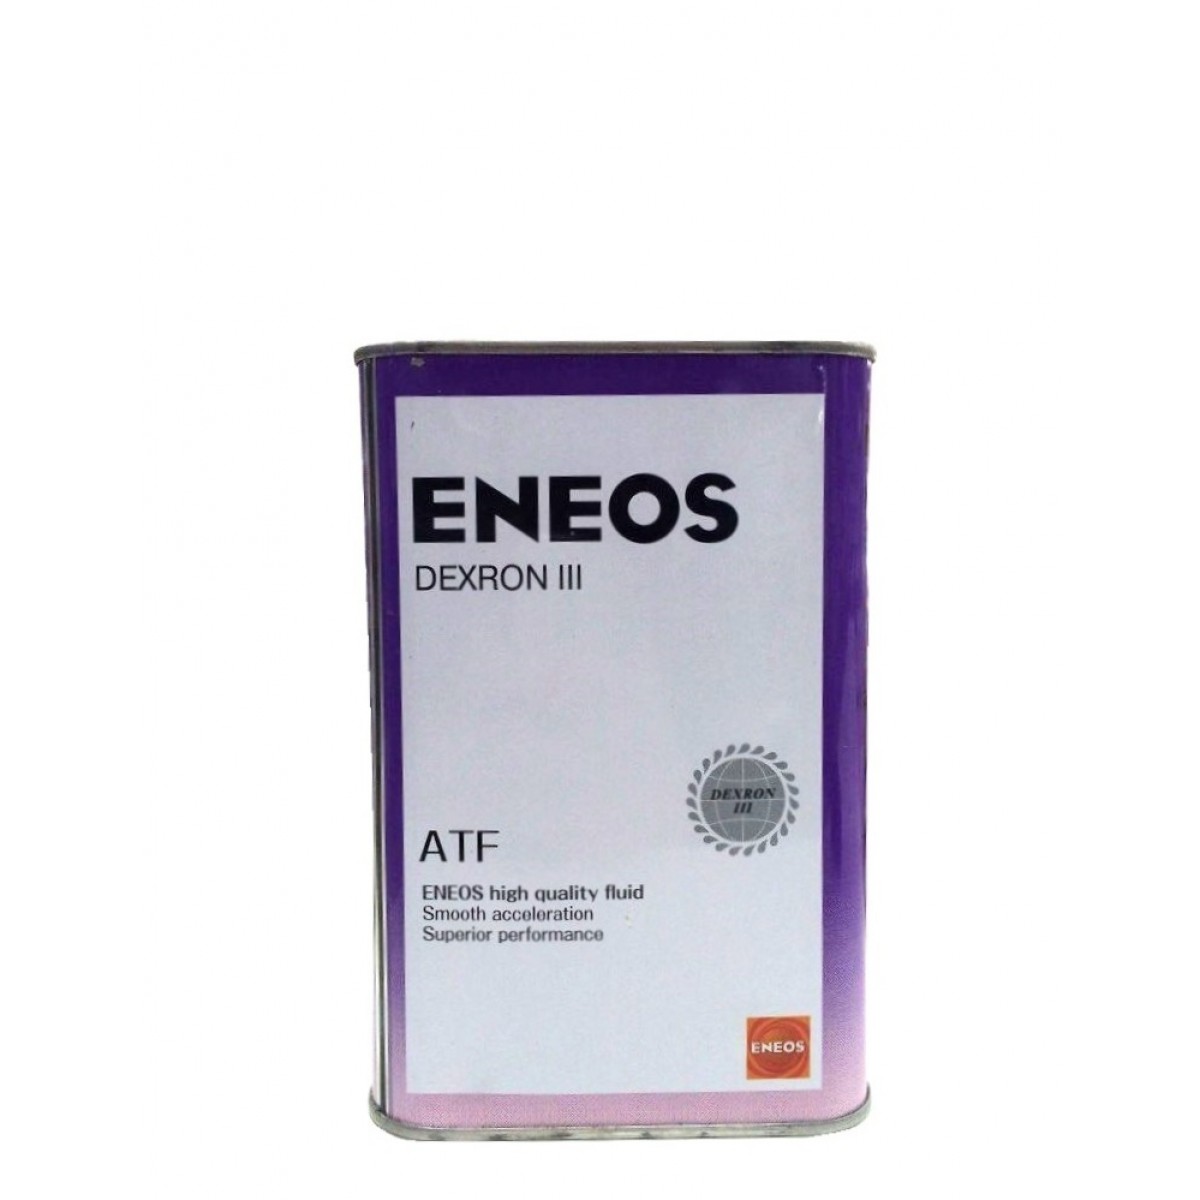 Atf 1 литр. ENEOS ATF 3. ENEOS oil1305. ATF Dexron 3 енеос.